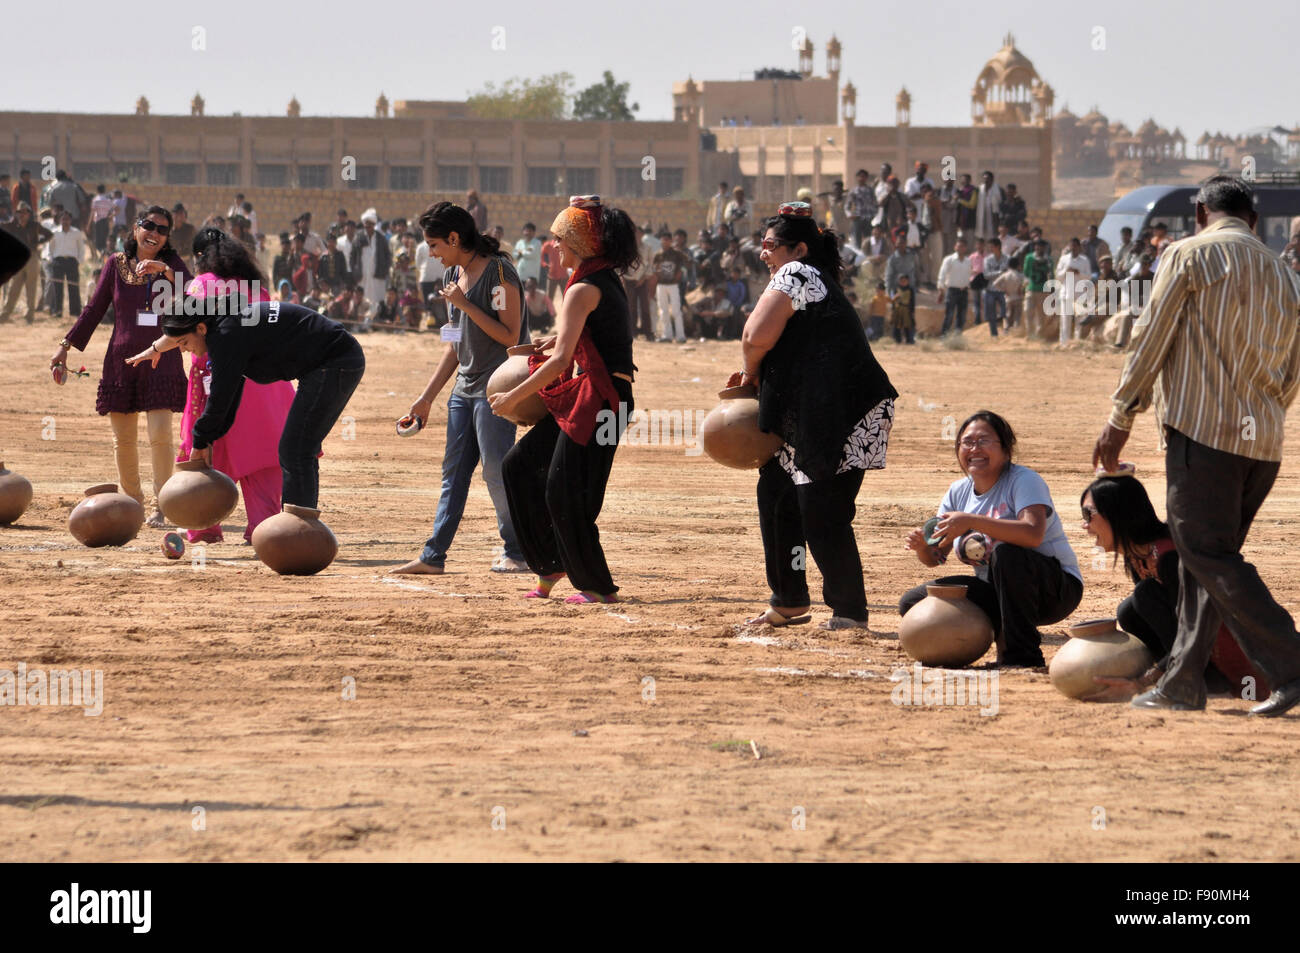 Frauen Matkaa Rennen Competiton eines die Hauptattraktion in Jaisalmer Desert Festival in Jaisalmer, Rajasthan, Indien. Stockfoto